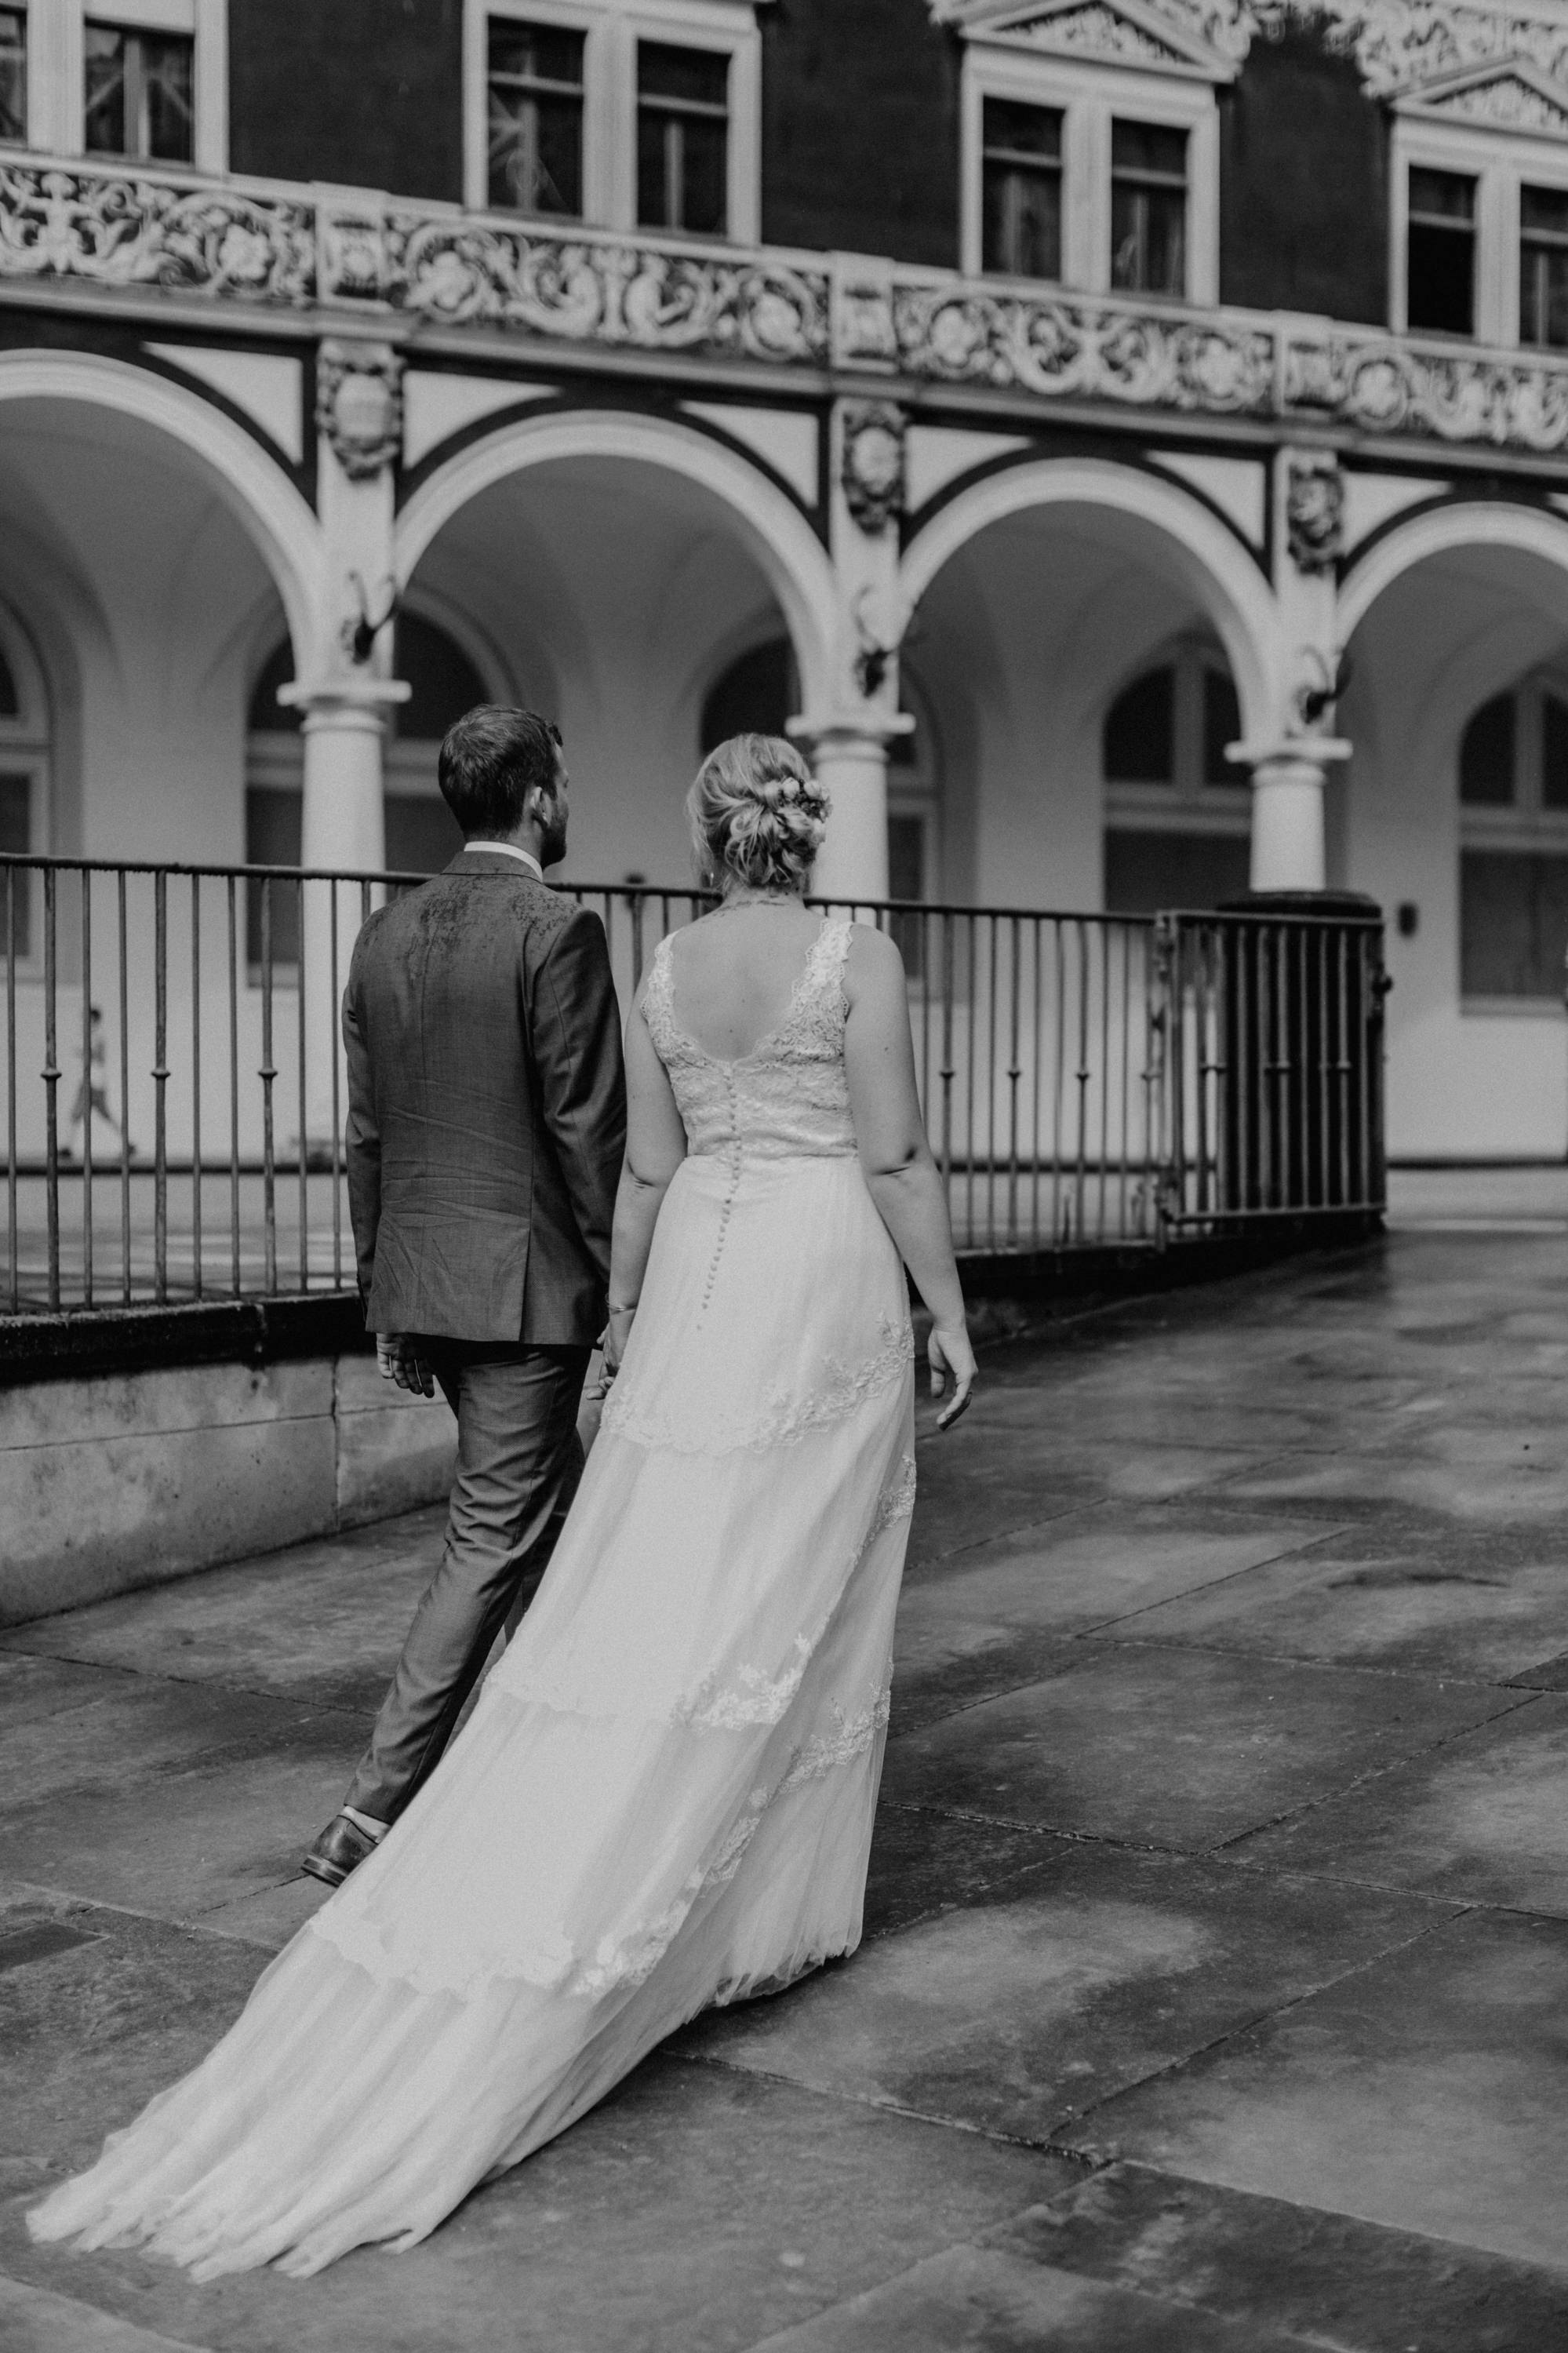 Hochzeitsfoto aus Dresden, aufgenommen von Tom und Lia Fotografie, Hochzeitsfotografen aus Rostock und Mecklenburg-Vorpommern.